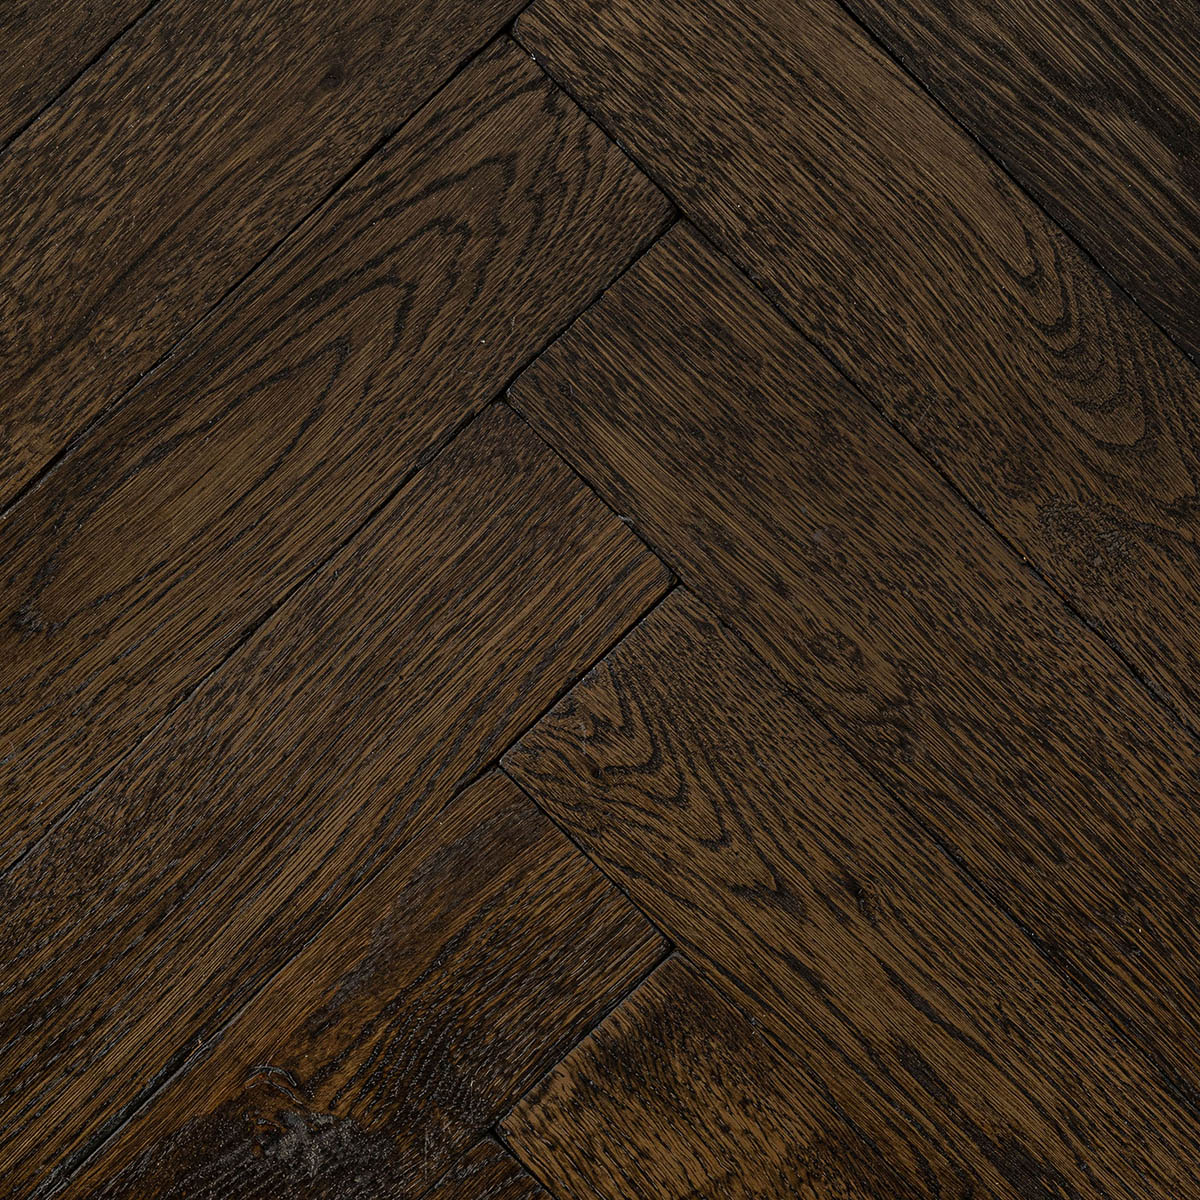 Eastwood - Dark Antique Solid Oak Parquet Floor